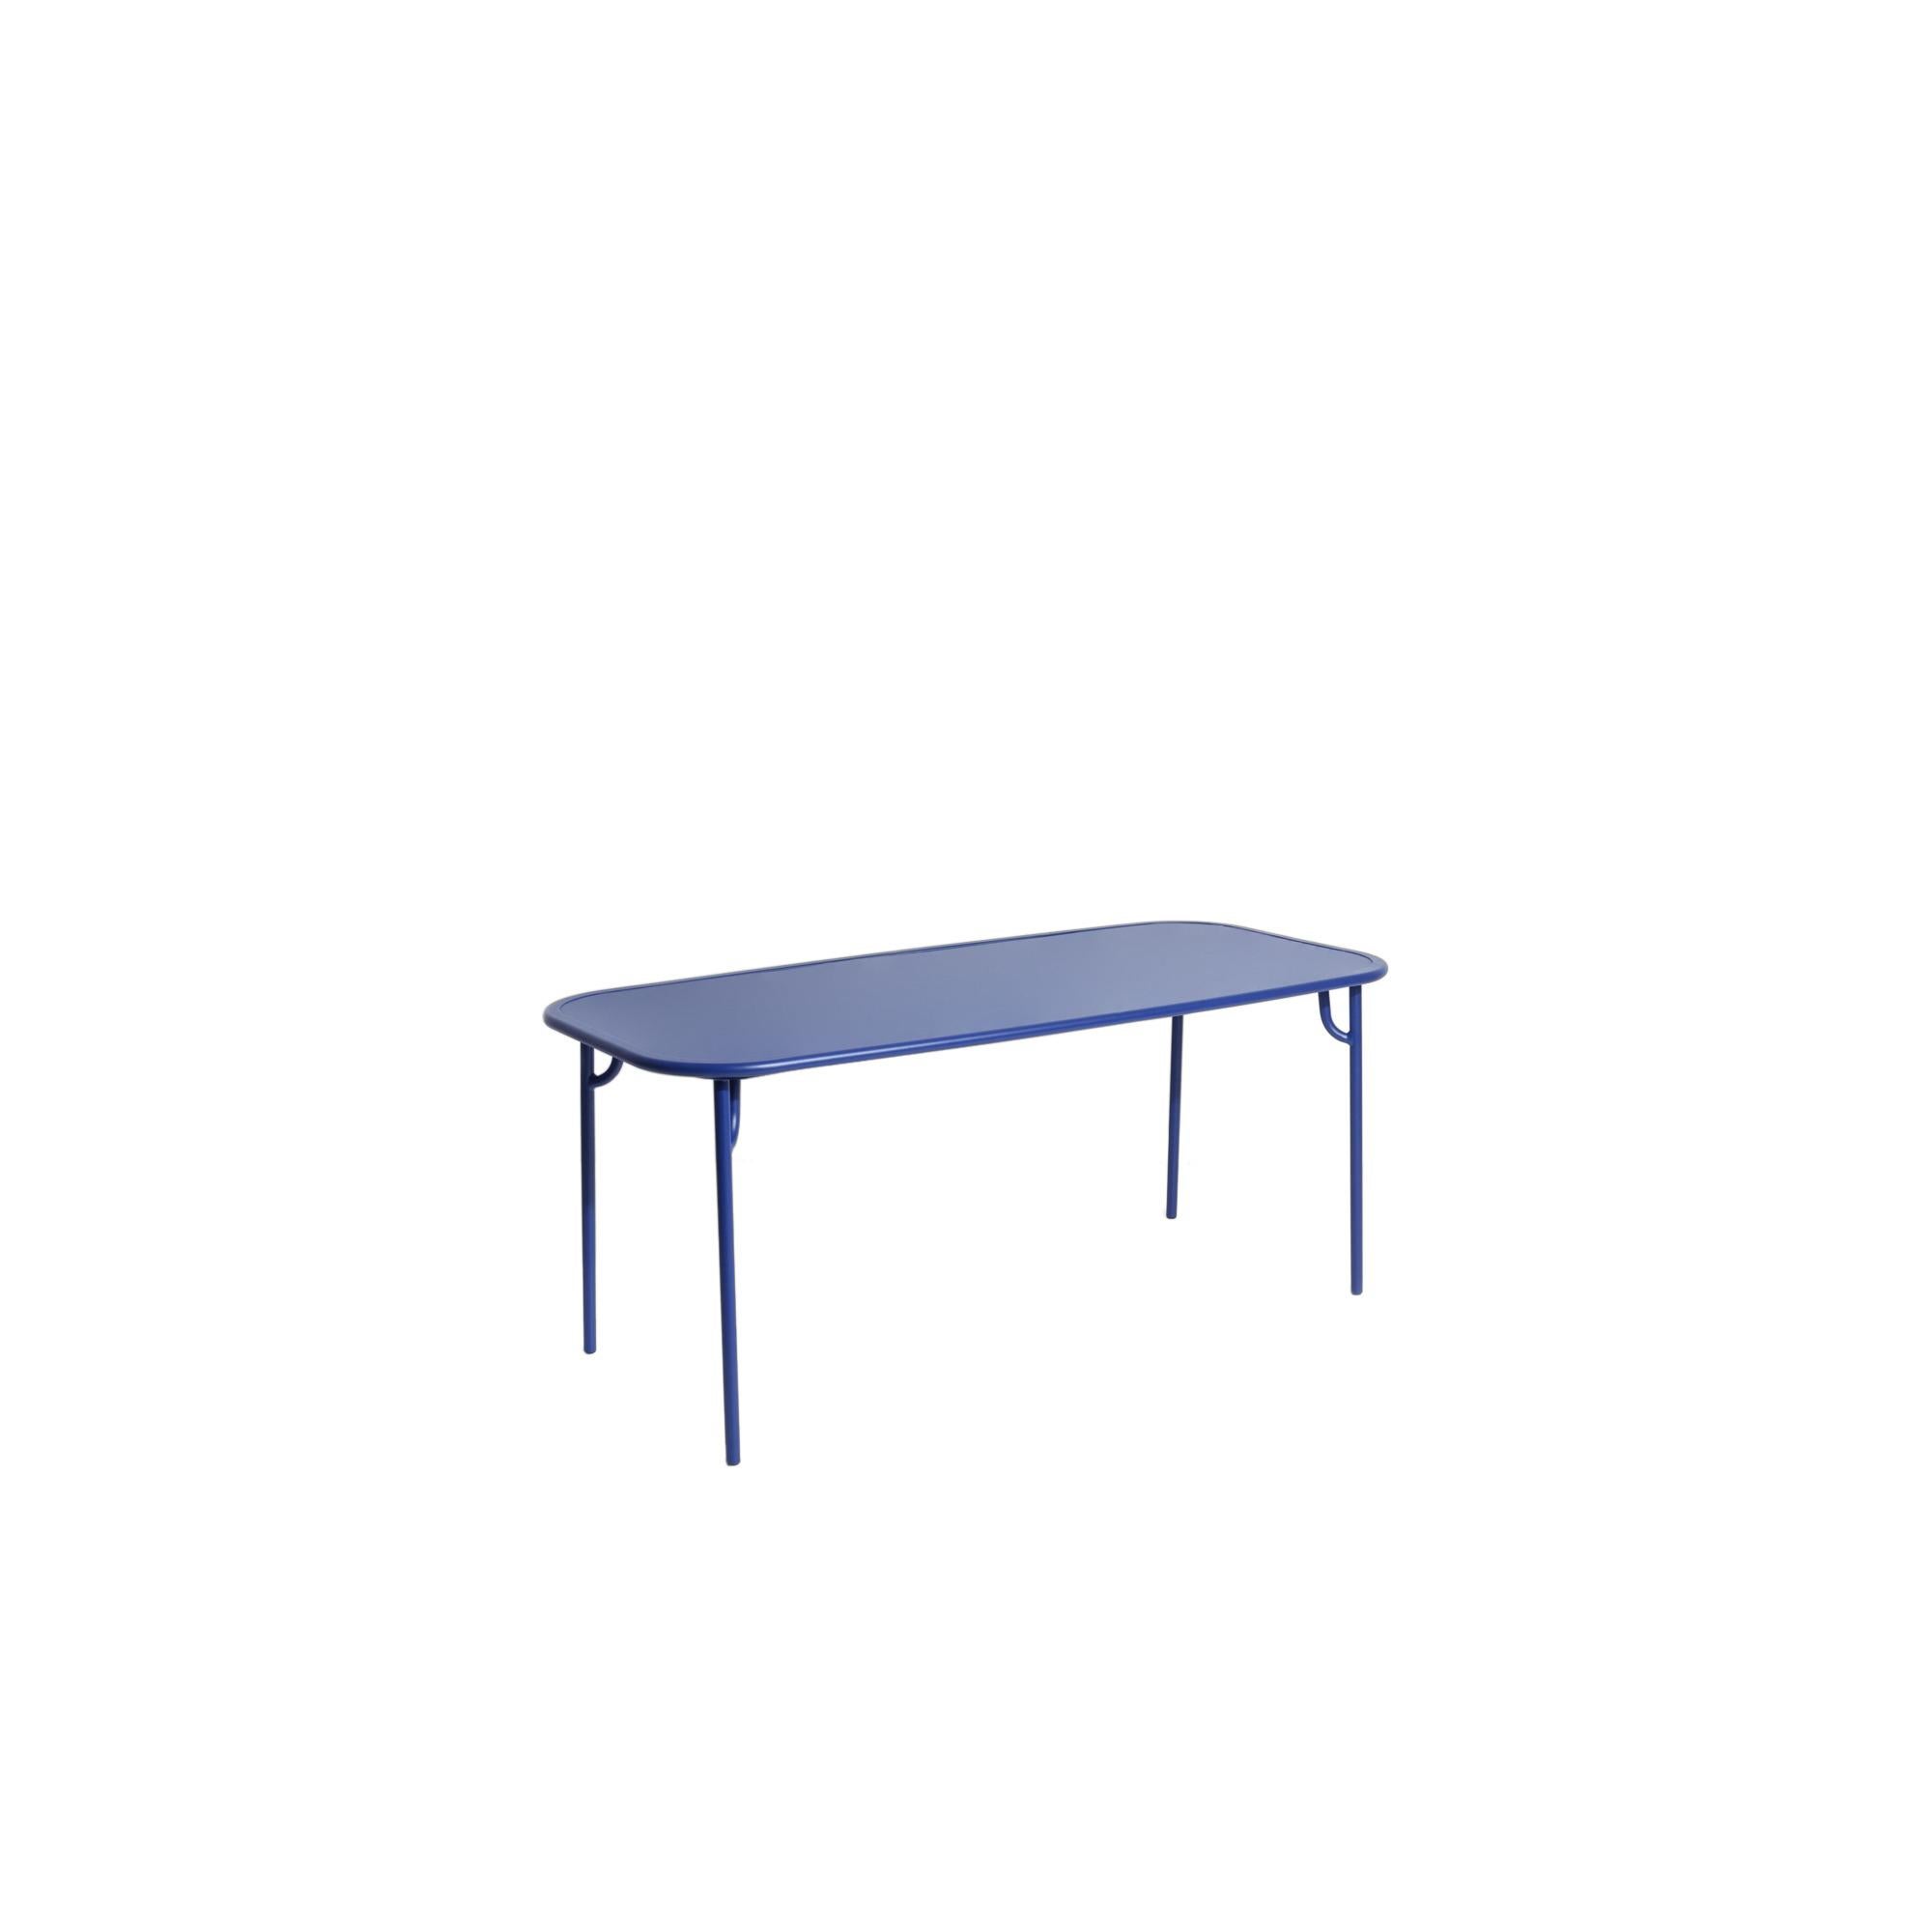 Petite Friture Week-End Medium Plain Rectangular Dining Table in Blue Aluminium by Studio BrichetZiegler, 2017

Die Week-End-Kollektion besteht aus einer kompletten Palette von Außenmöbeln mit mattierter Epoxidharzlackierung mit Aluminiummaserung,